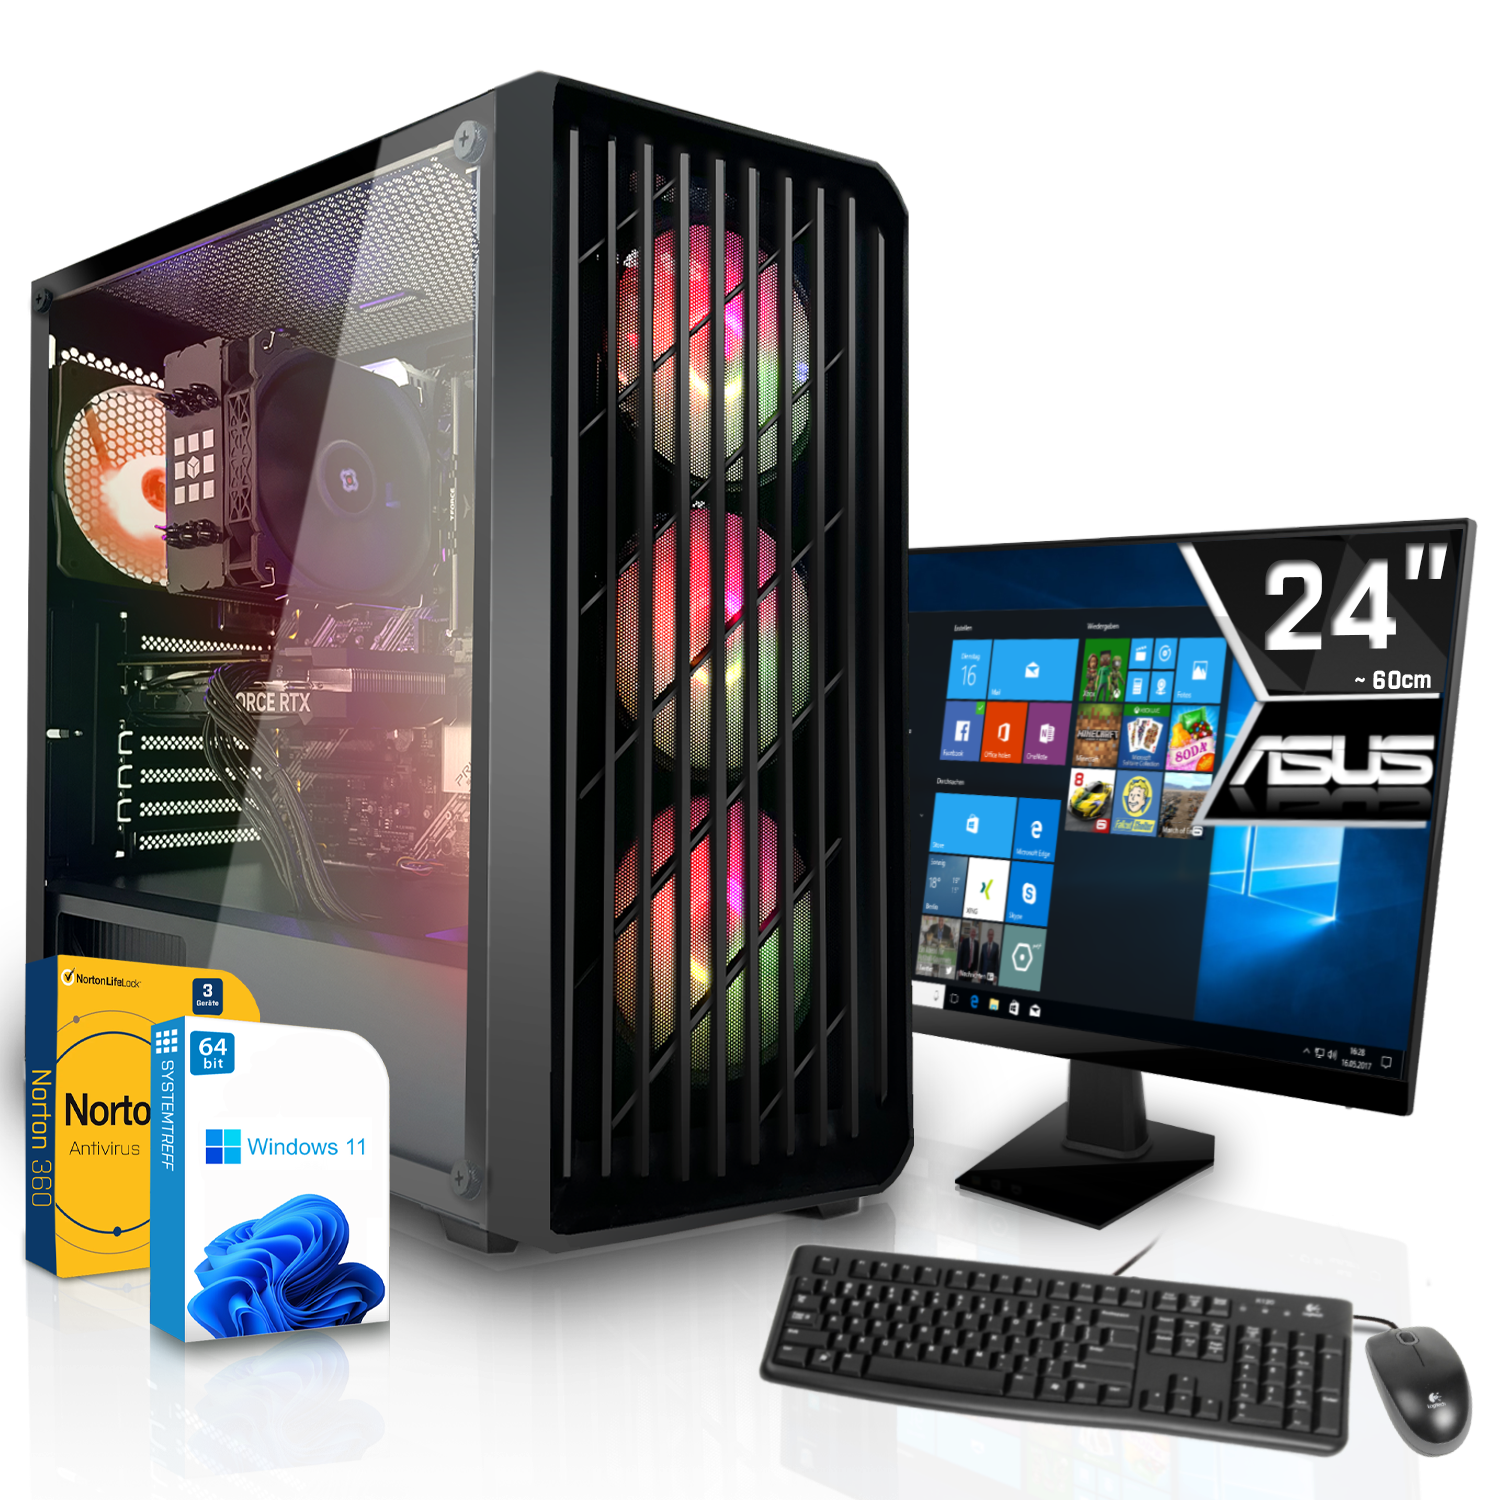 SYSTEMTREFF Gaming Komplett Intel Core 8GB PC RTX RAM, GB GB i7-12700F GB Nvidia 8 3060 1000 mit Prozessor, GDDR6, i7-12700F, 16 mSSD, GeForce Komplett